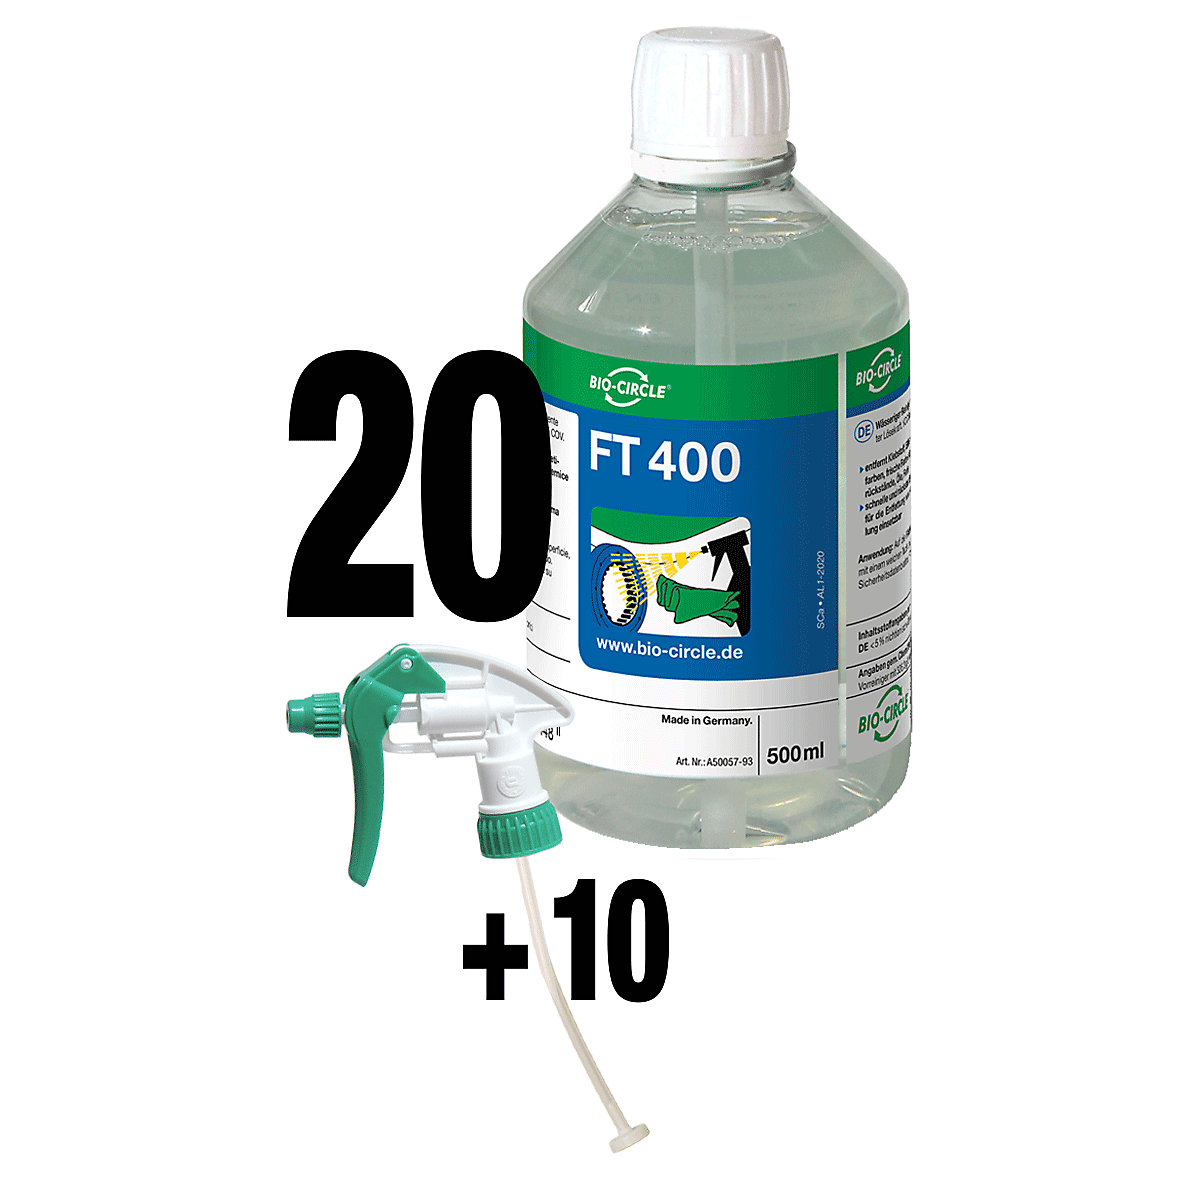 FT 400 cleaner – Bio-Circle